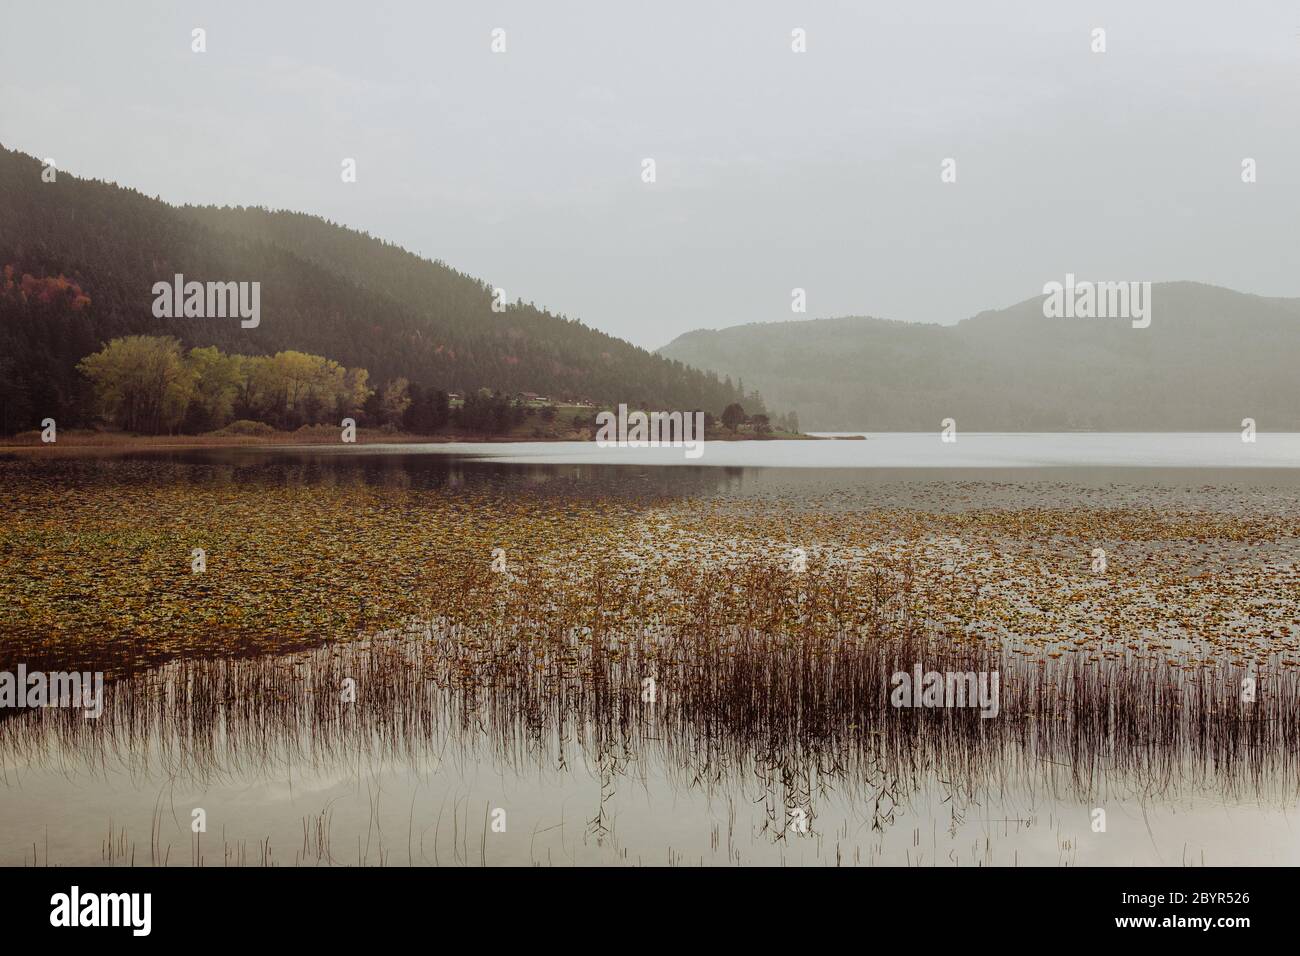 Splendido paesaggio in autunno con montagna, alberi e canne che si riflettono su un lago calmo come uno specchio, riflessione sul Lago Abant, Bolu, TURCHIA Foto Stock